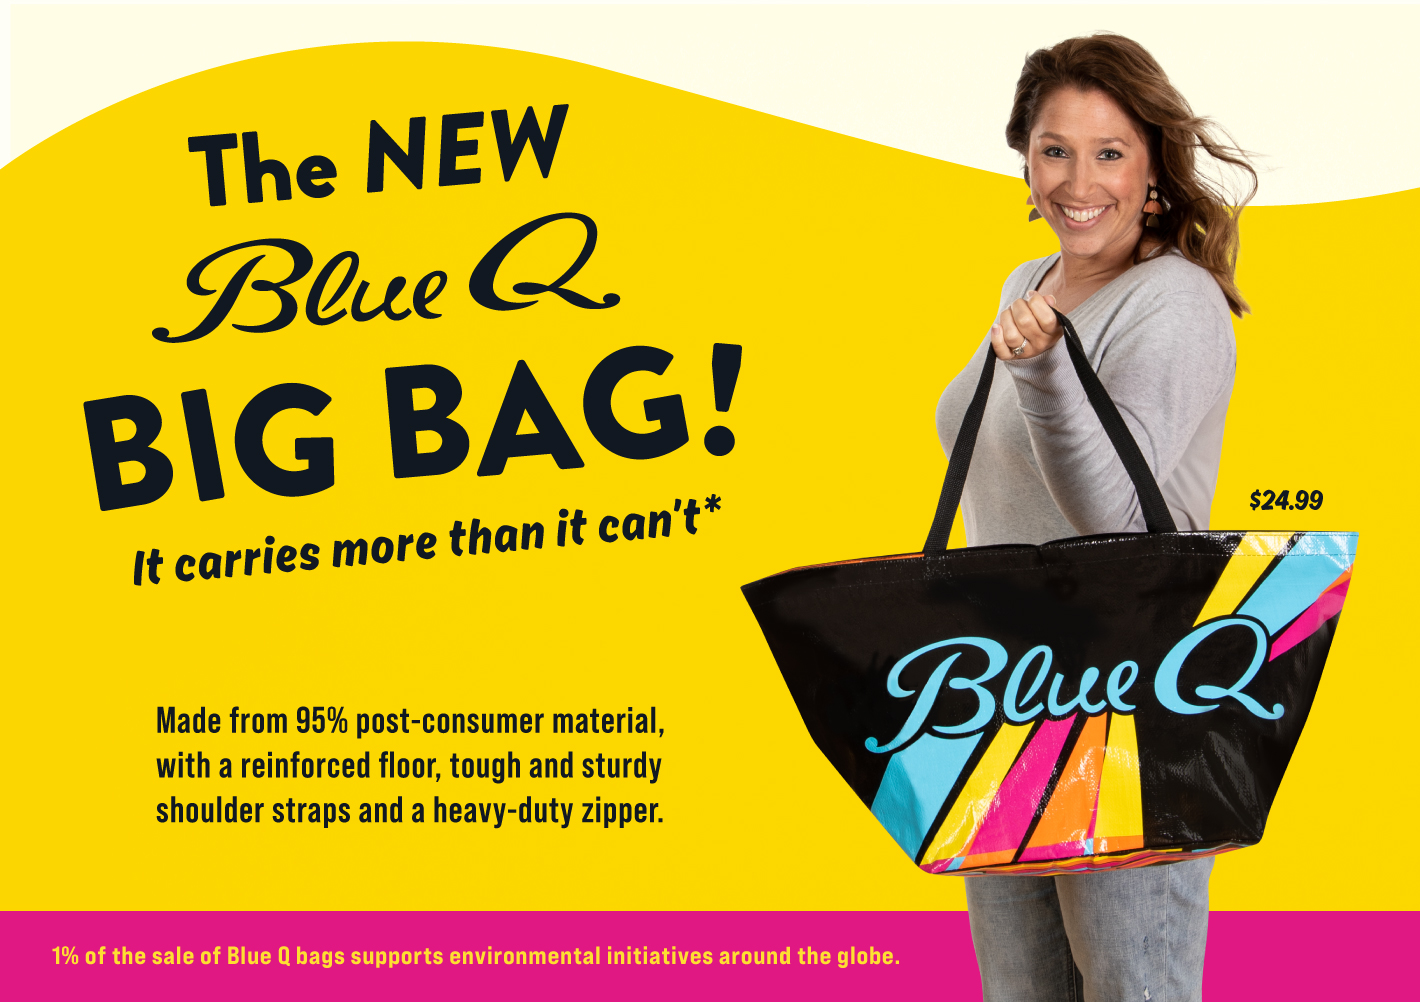 It's the new Blue Q Big Bag!